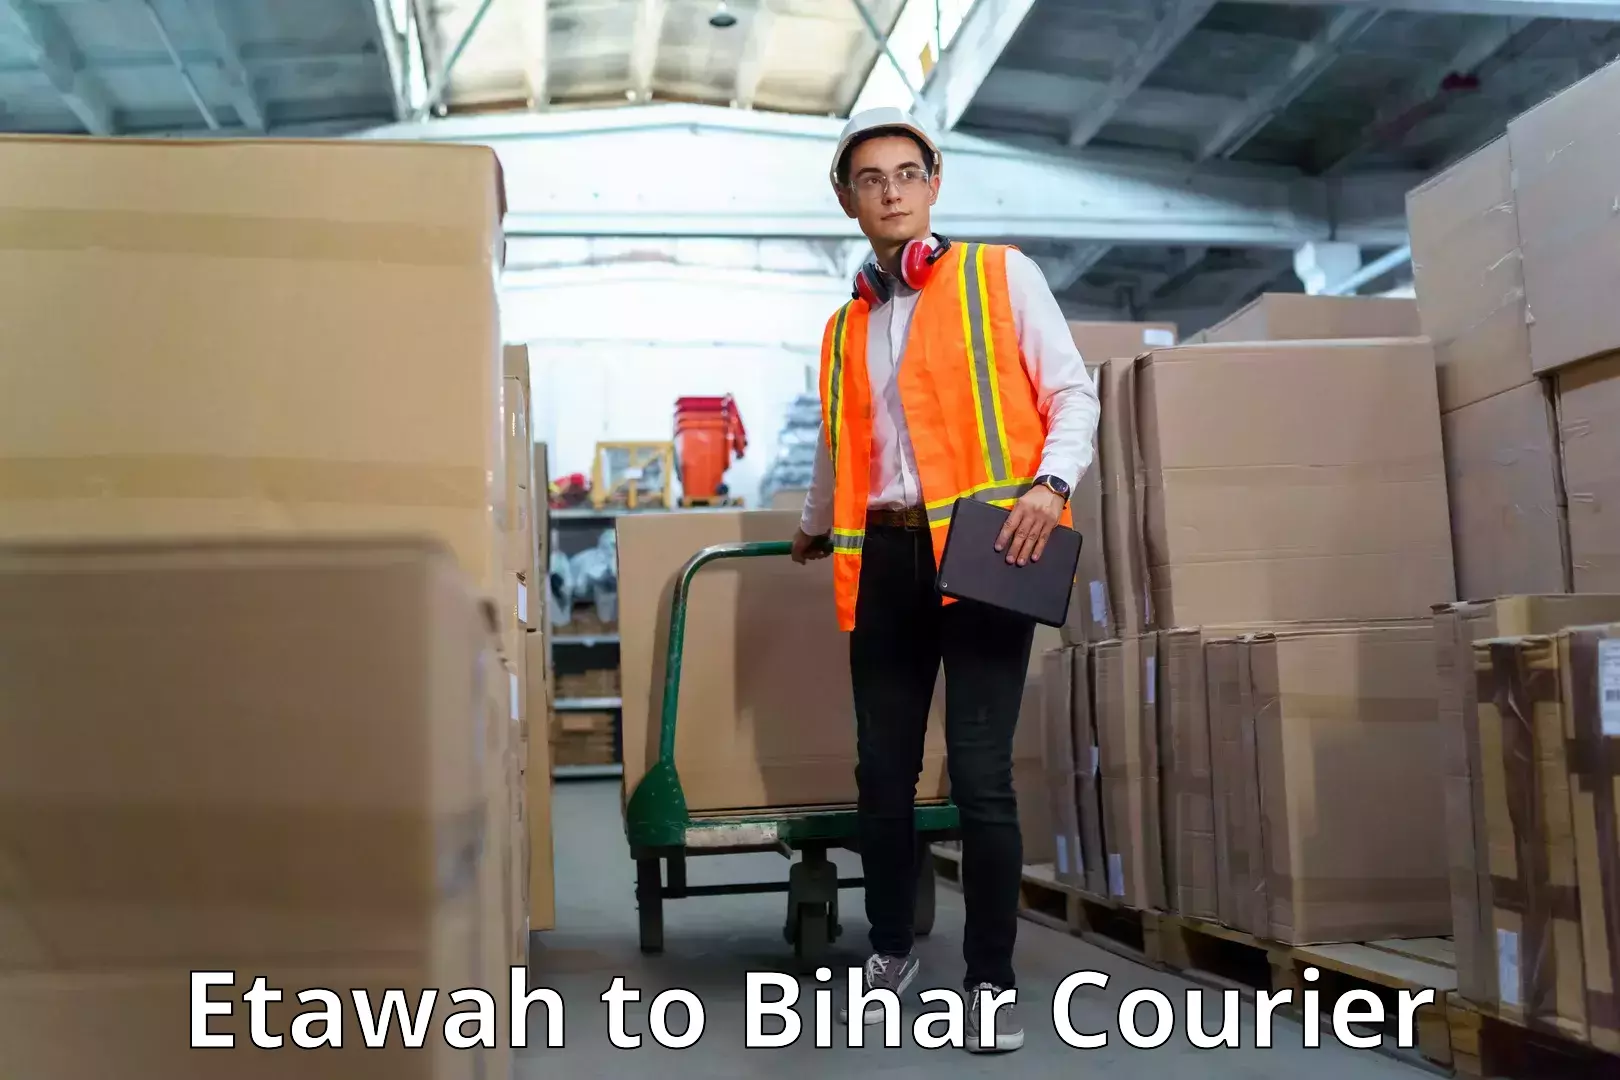 Courier insurance Etawah to Bihar